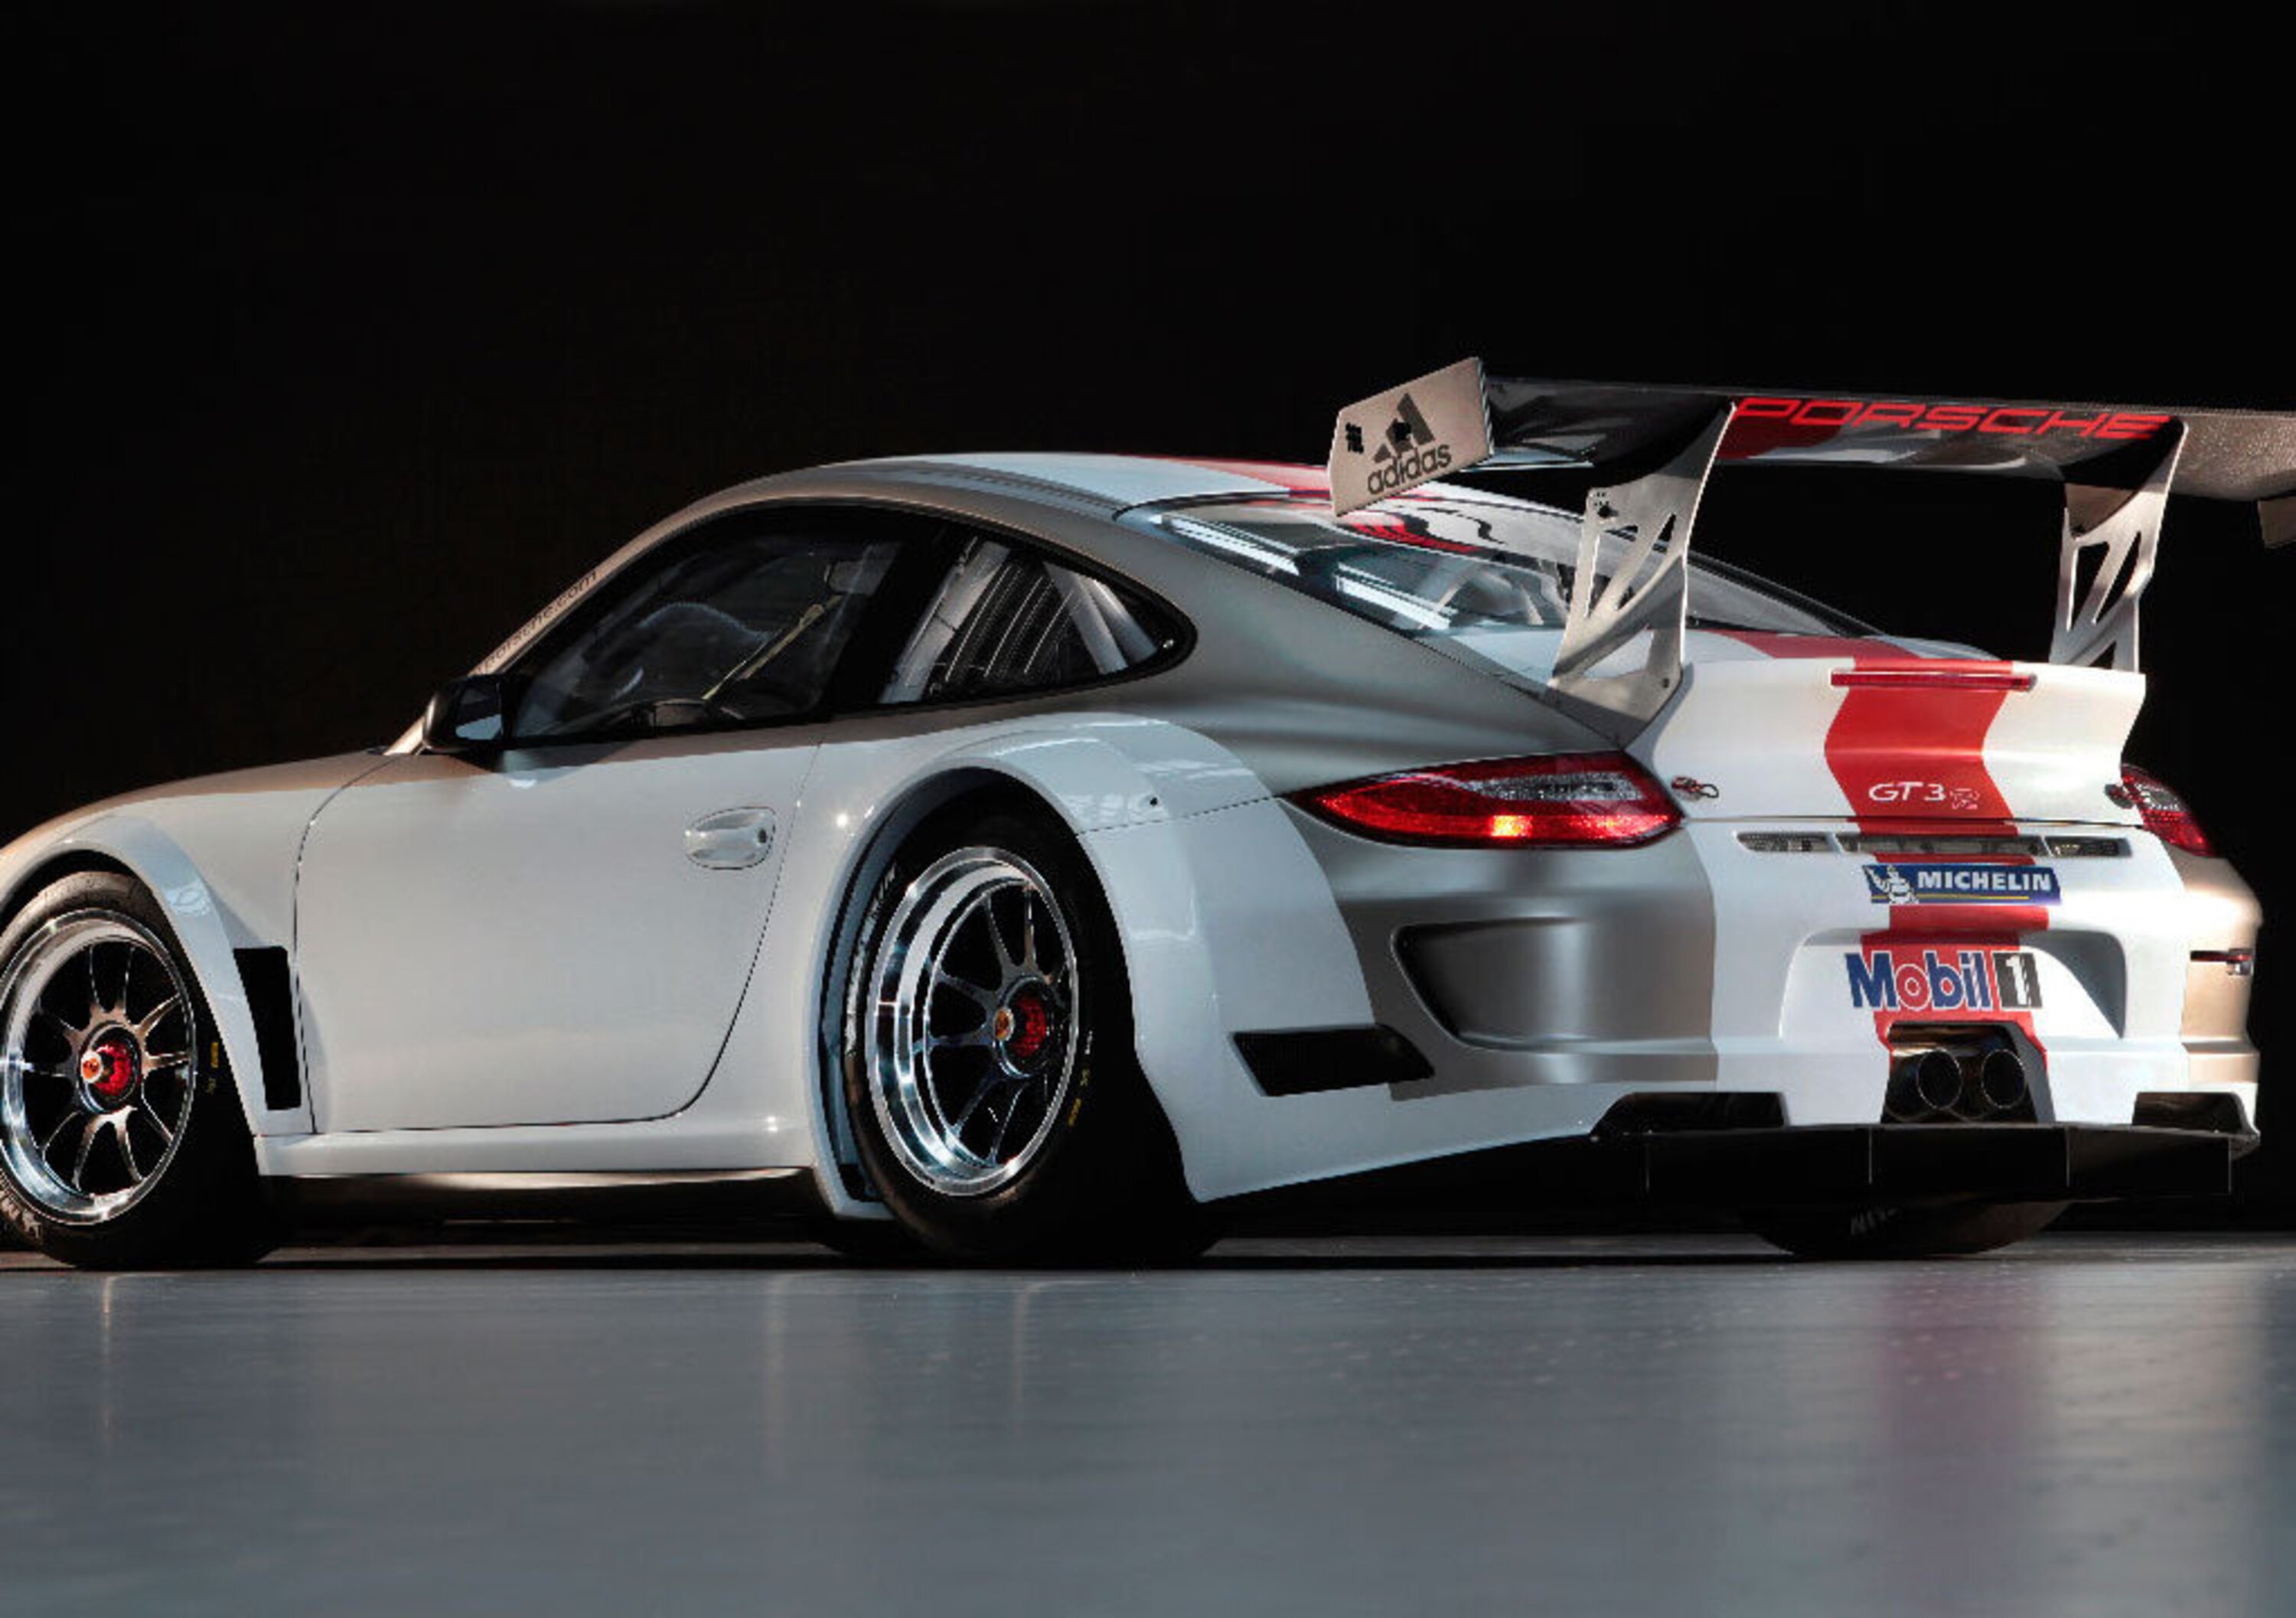 Porsche 911 GT3 R 2012: la versione racing per i privati